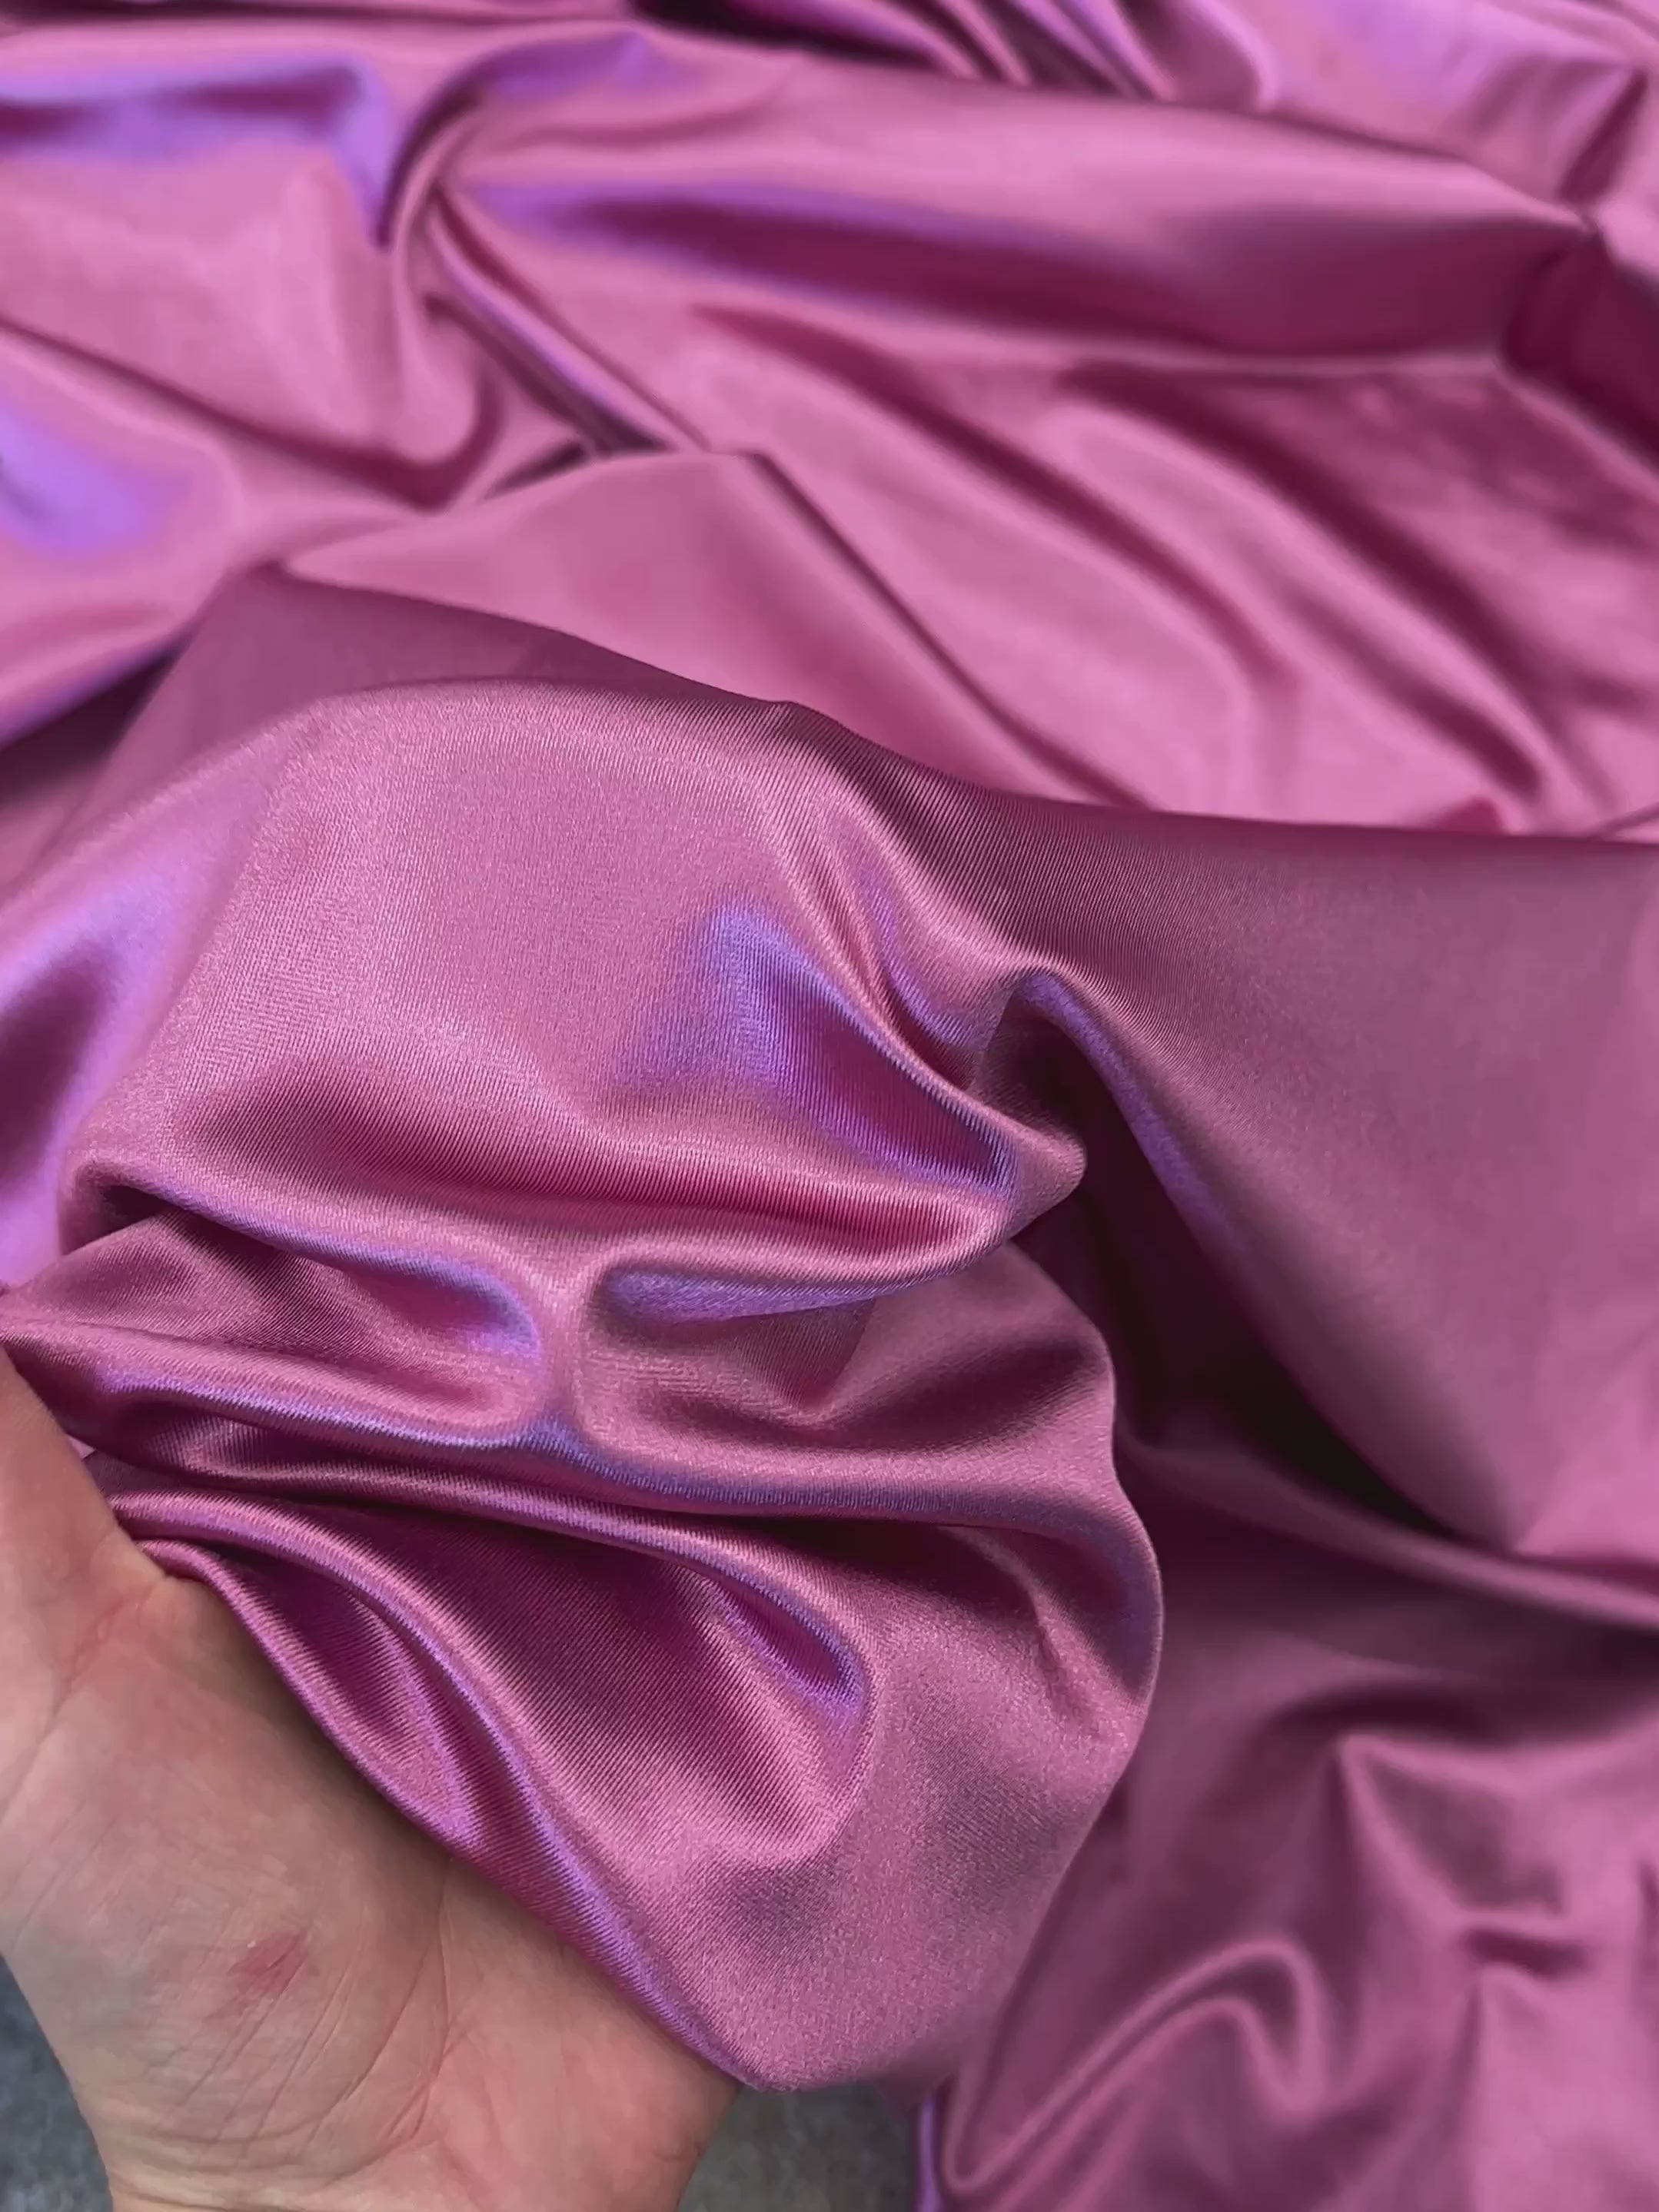 Buy Shiny Finish Milliskin Nylon Spandex Fabric bluish Purple 4